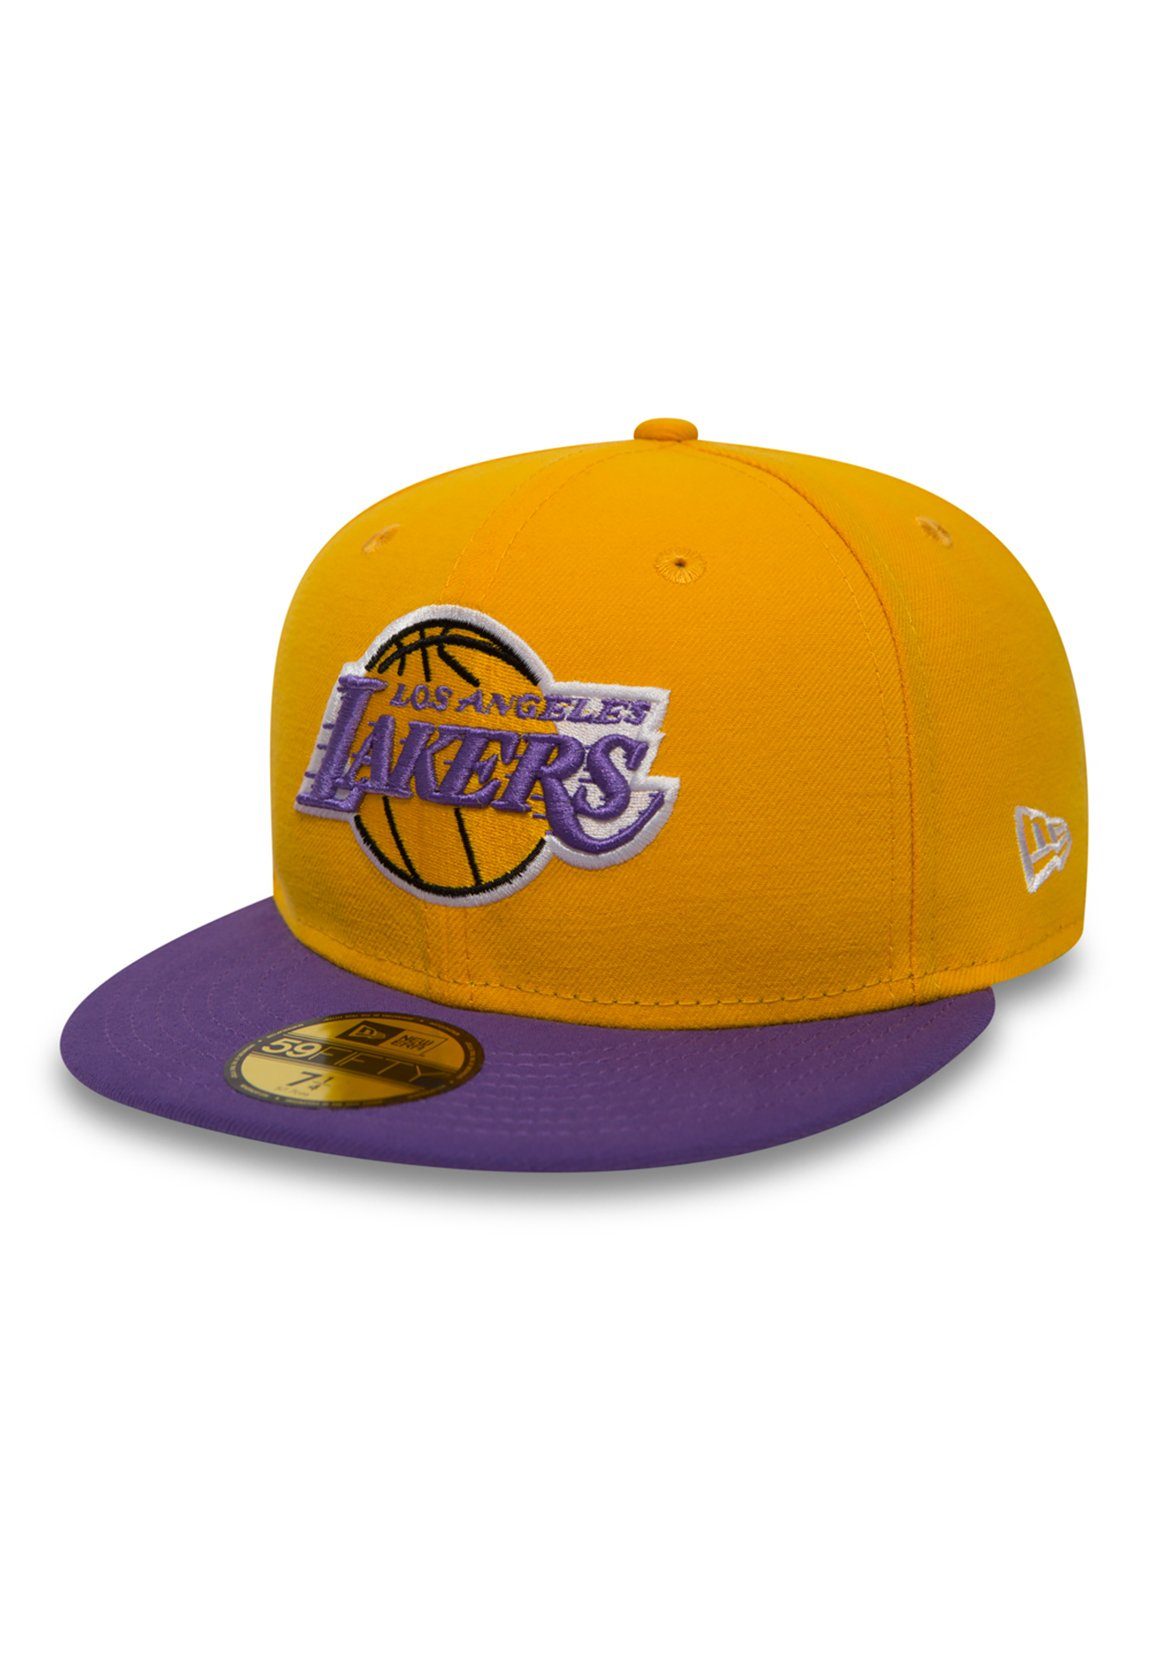 Cap New Era Yellow-Purple Era Baseball - - LA 59Fiftys Cap New LAKERS gelb